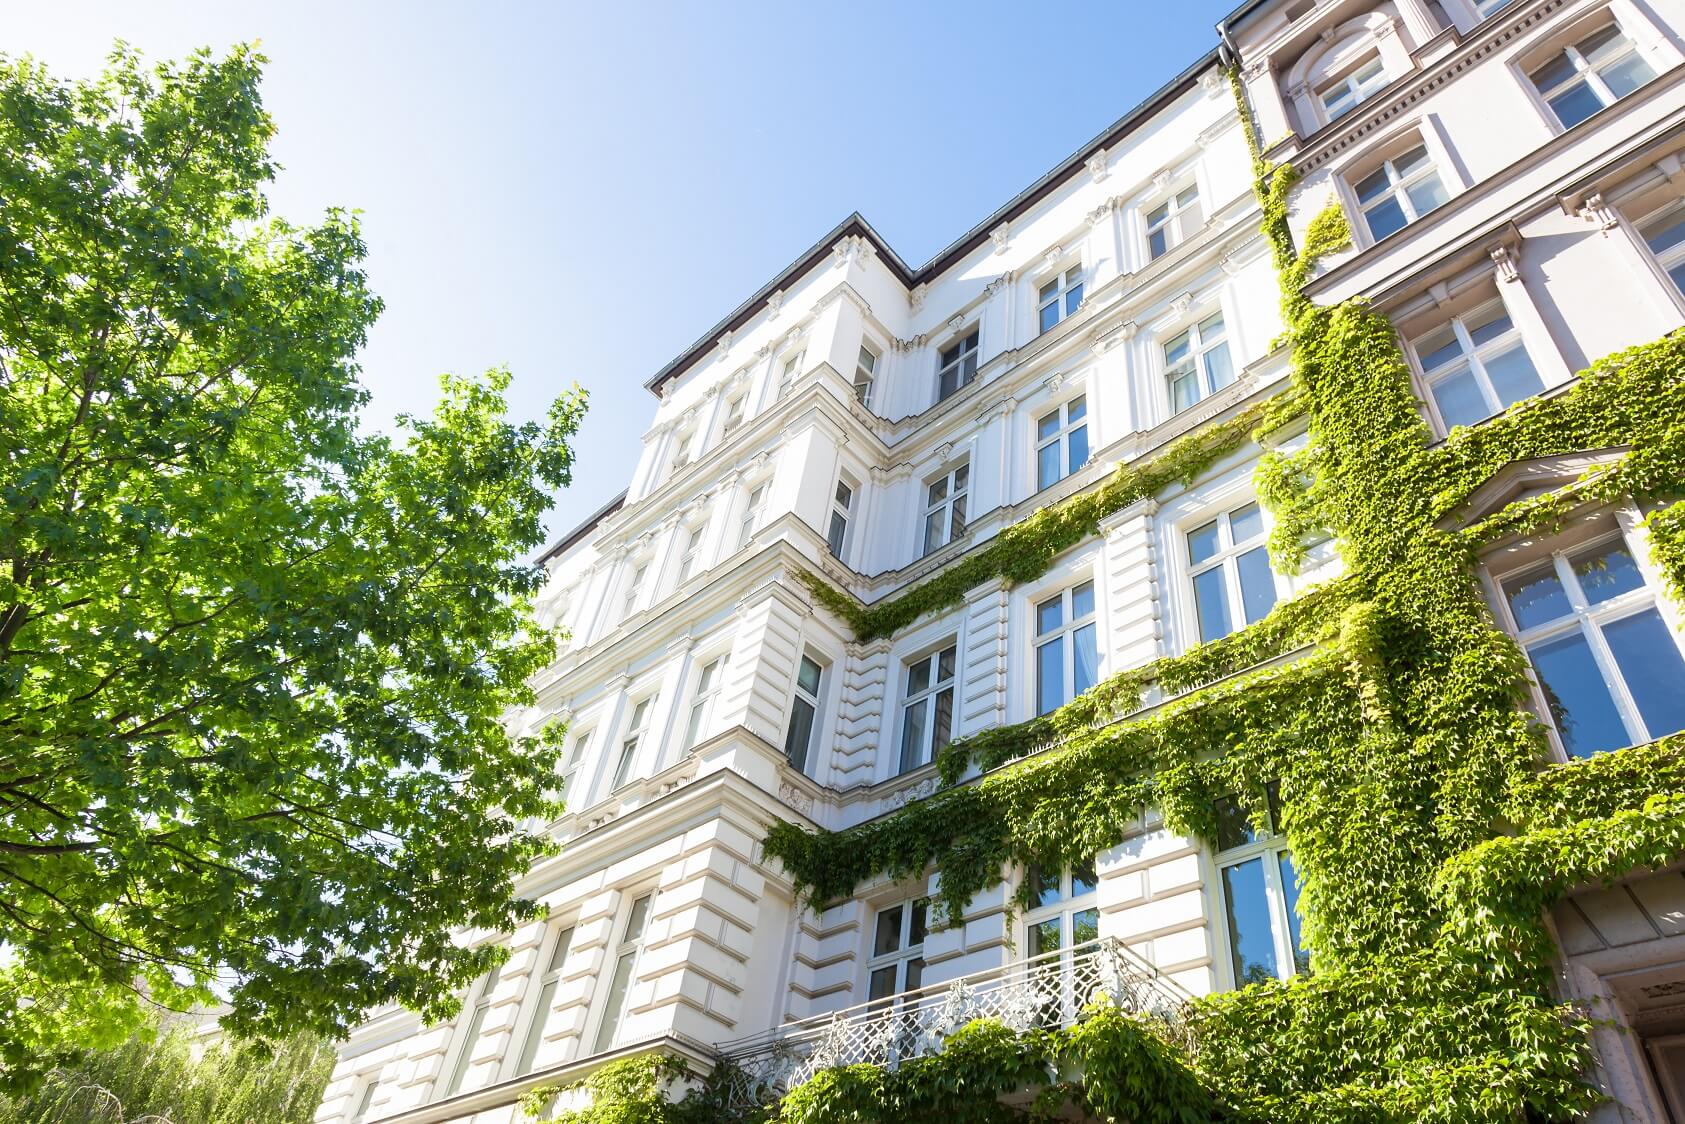 Blick von der Straße nach oben auf die weiße, teilweise mit Grünpflanzen bewachsene Fassade eines Mehrfamilienhauses